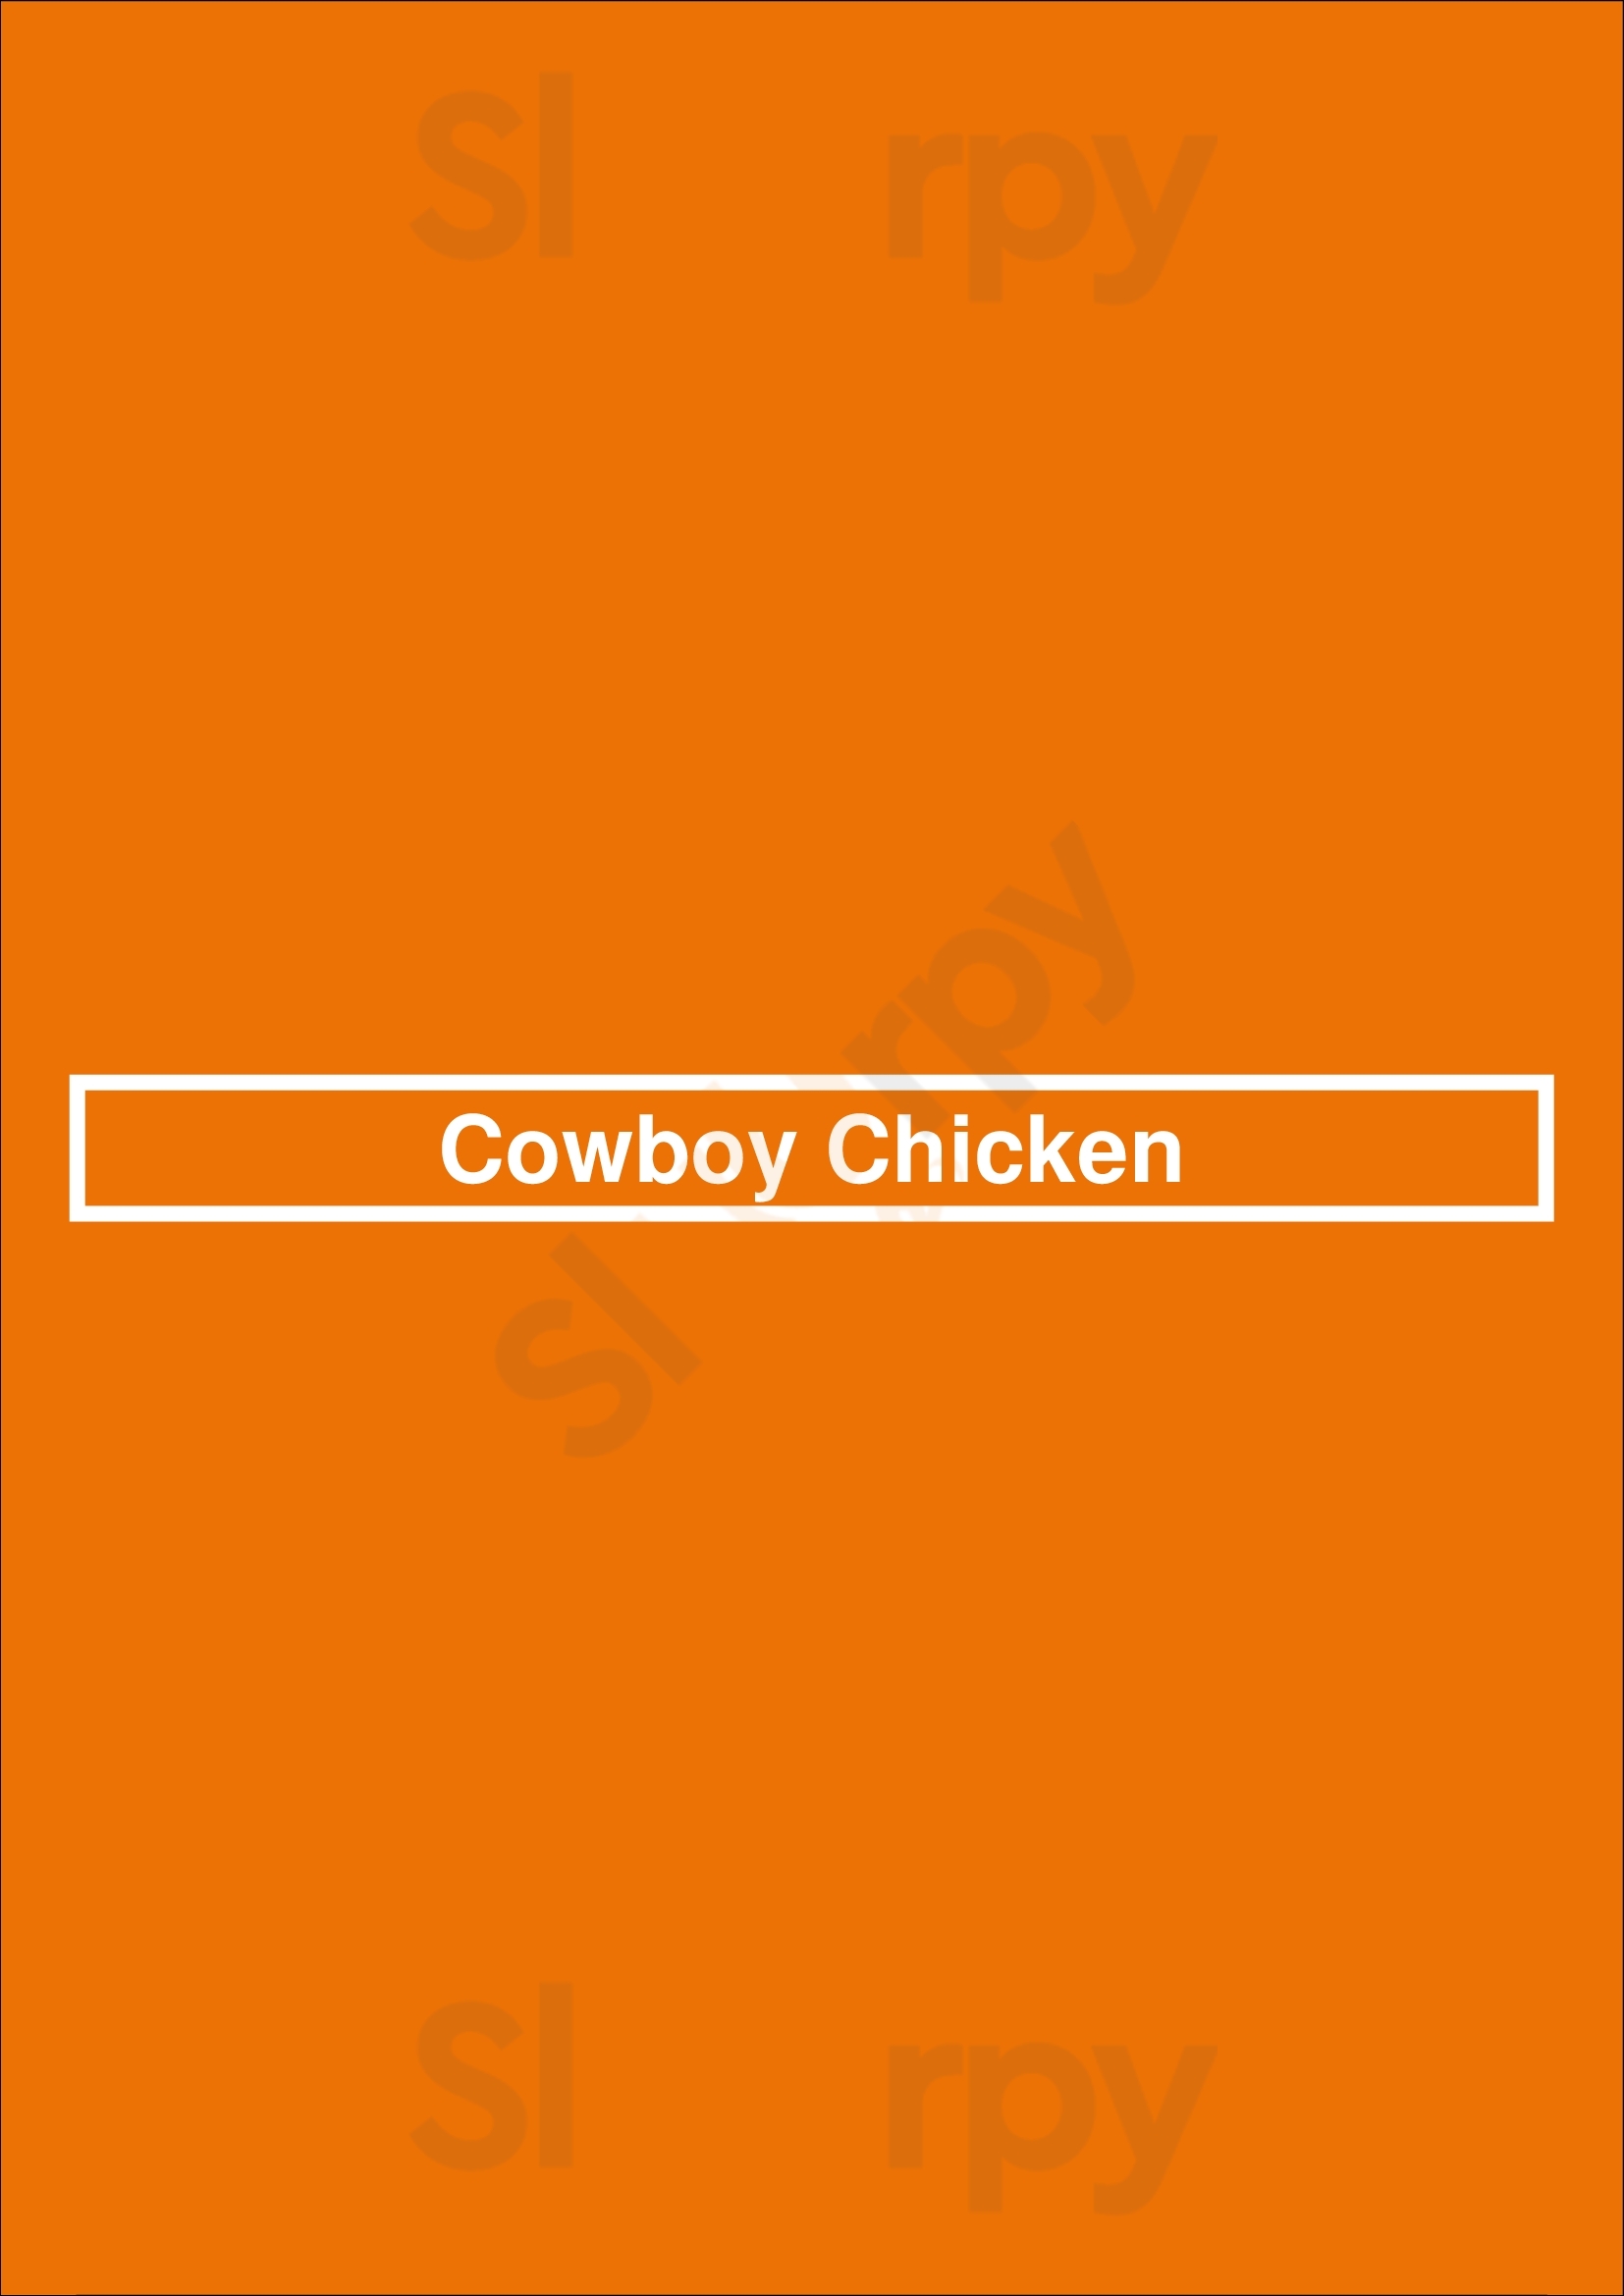 Cowboy Chicken Plano Menu - 1